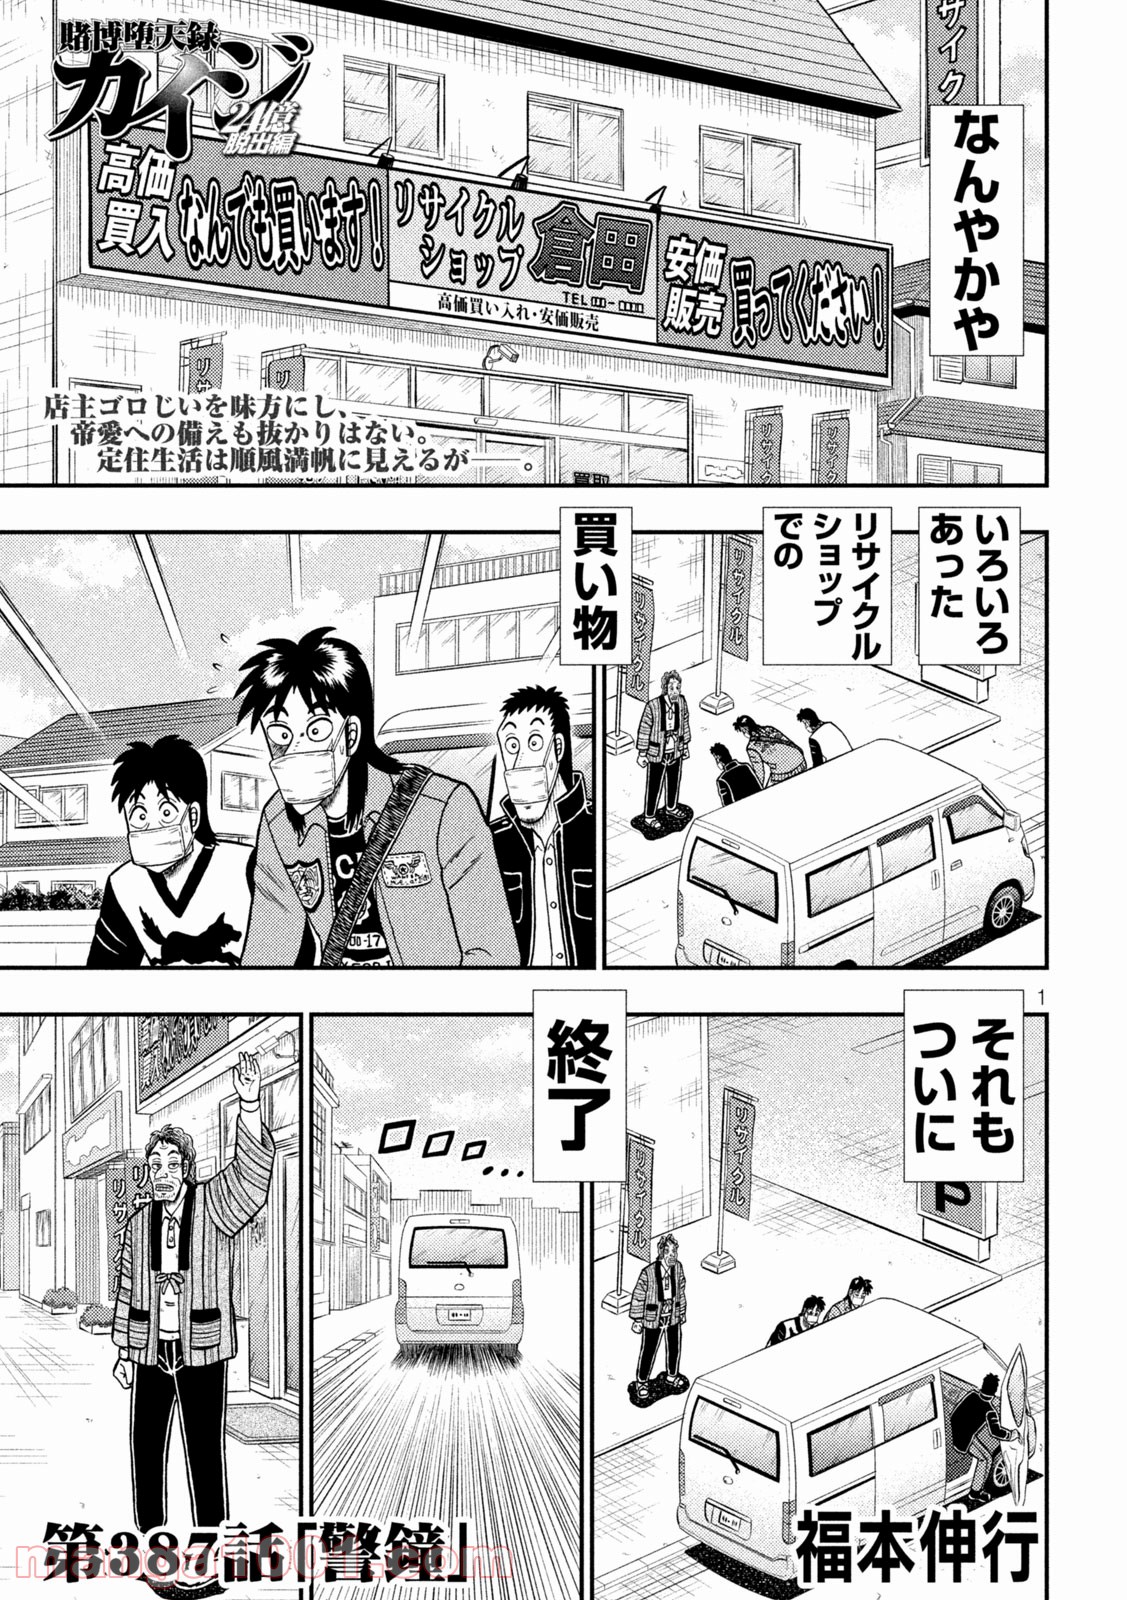 賭博堕天録カイジ ワン ポーカー編 Raw 第387話 Manga Raw